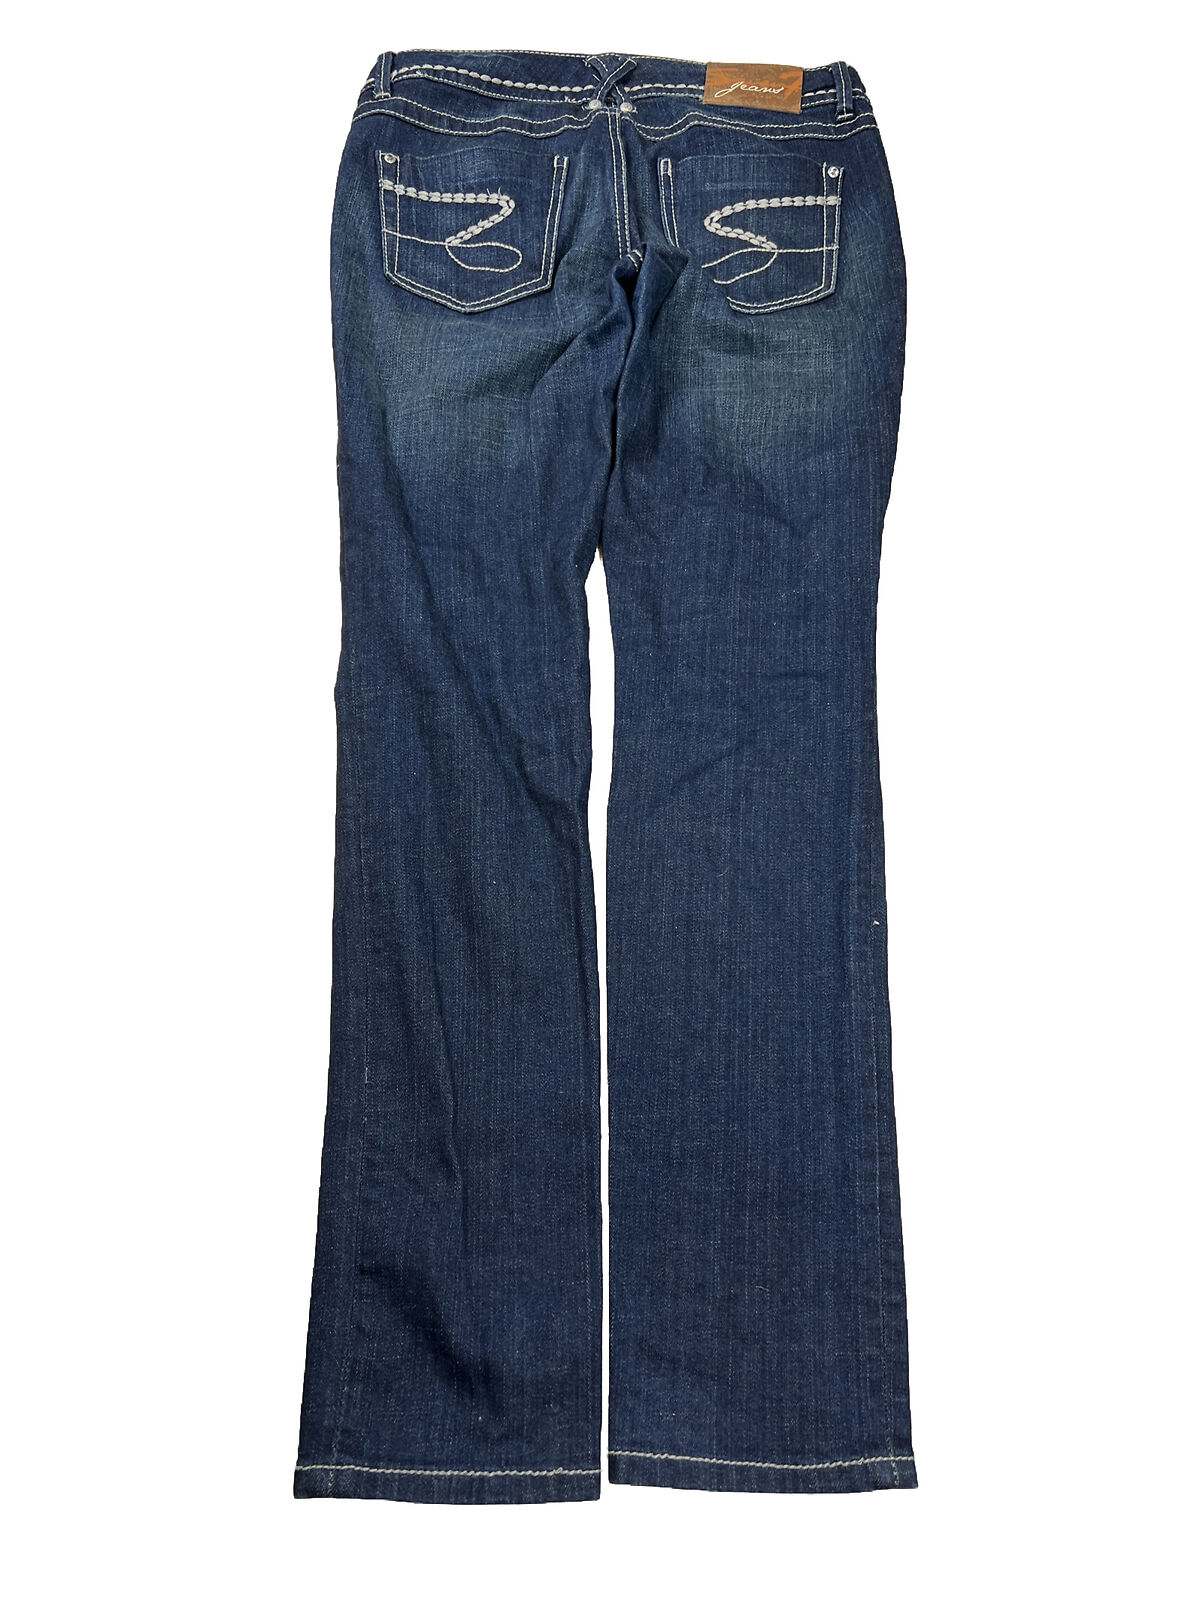 Seven7 Jeans ajustados elásticos con lavado oscuro para mujer - 28